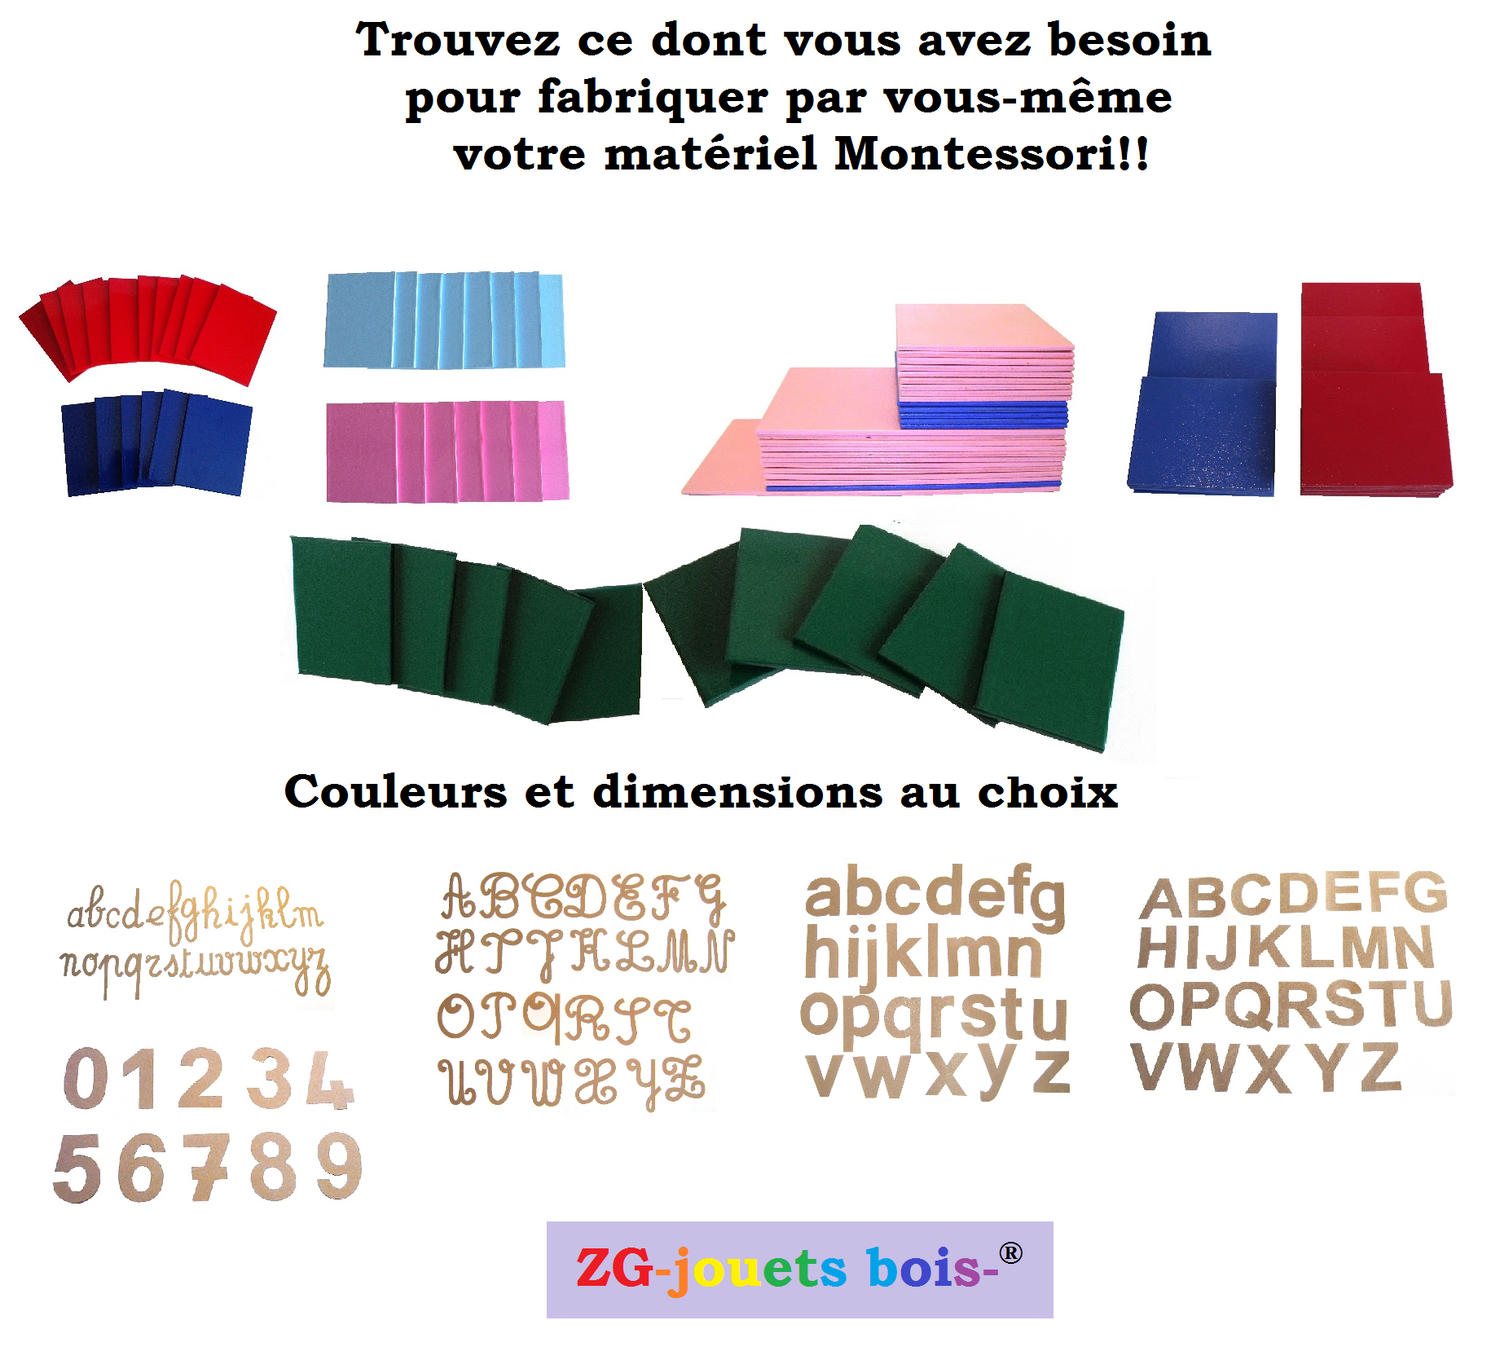 matériel pour fabriquer votre matériel montessori par vous-même, chiffres et lettres rugueuses Montessori, réalisation artisanale française ZG-jouetsbois- 